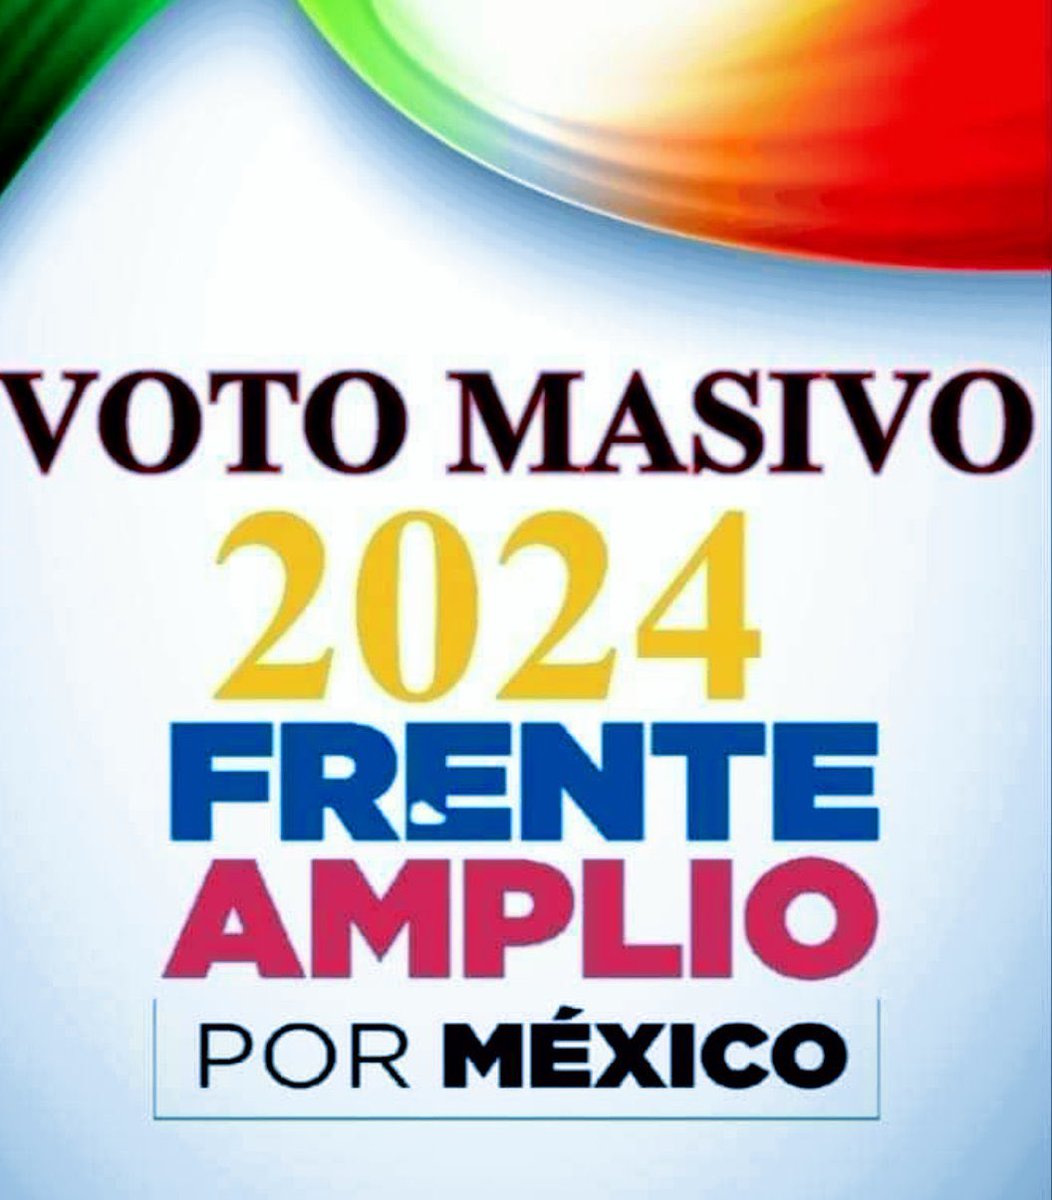 @teresacastellmx @INEMexico #YaSeVan salgamos a votar este 2 de junio para botarlos.